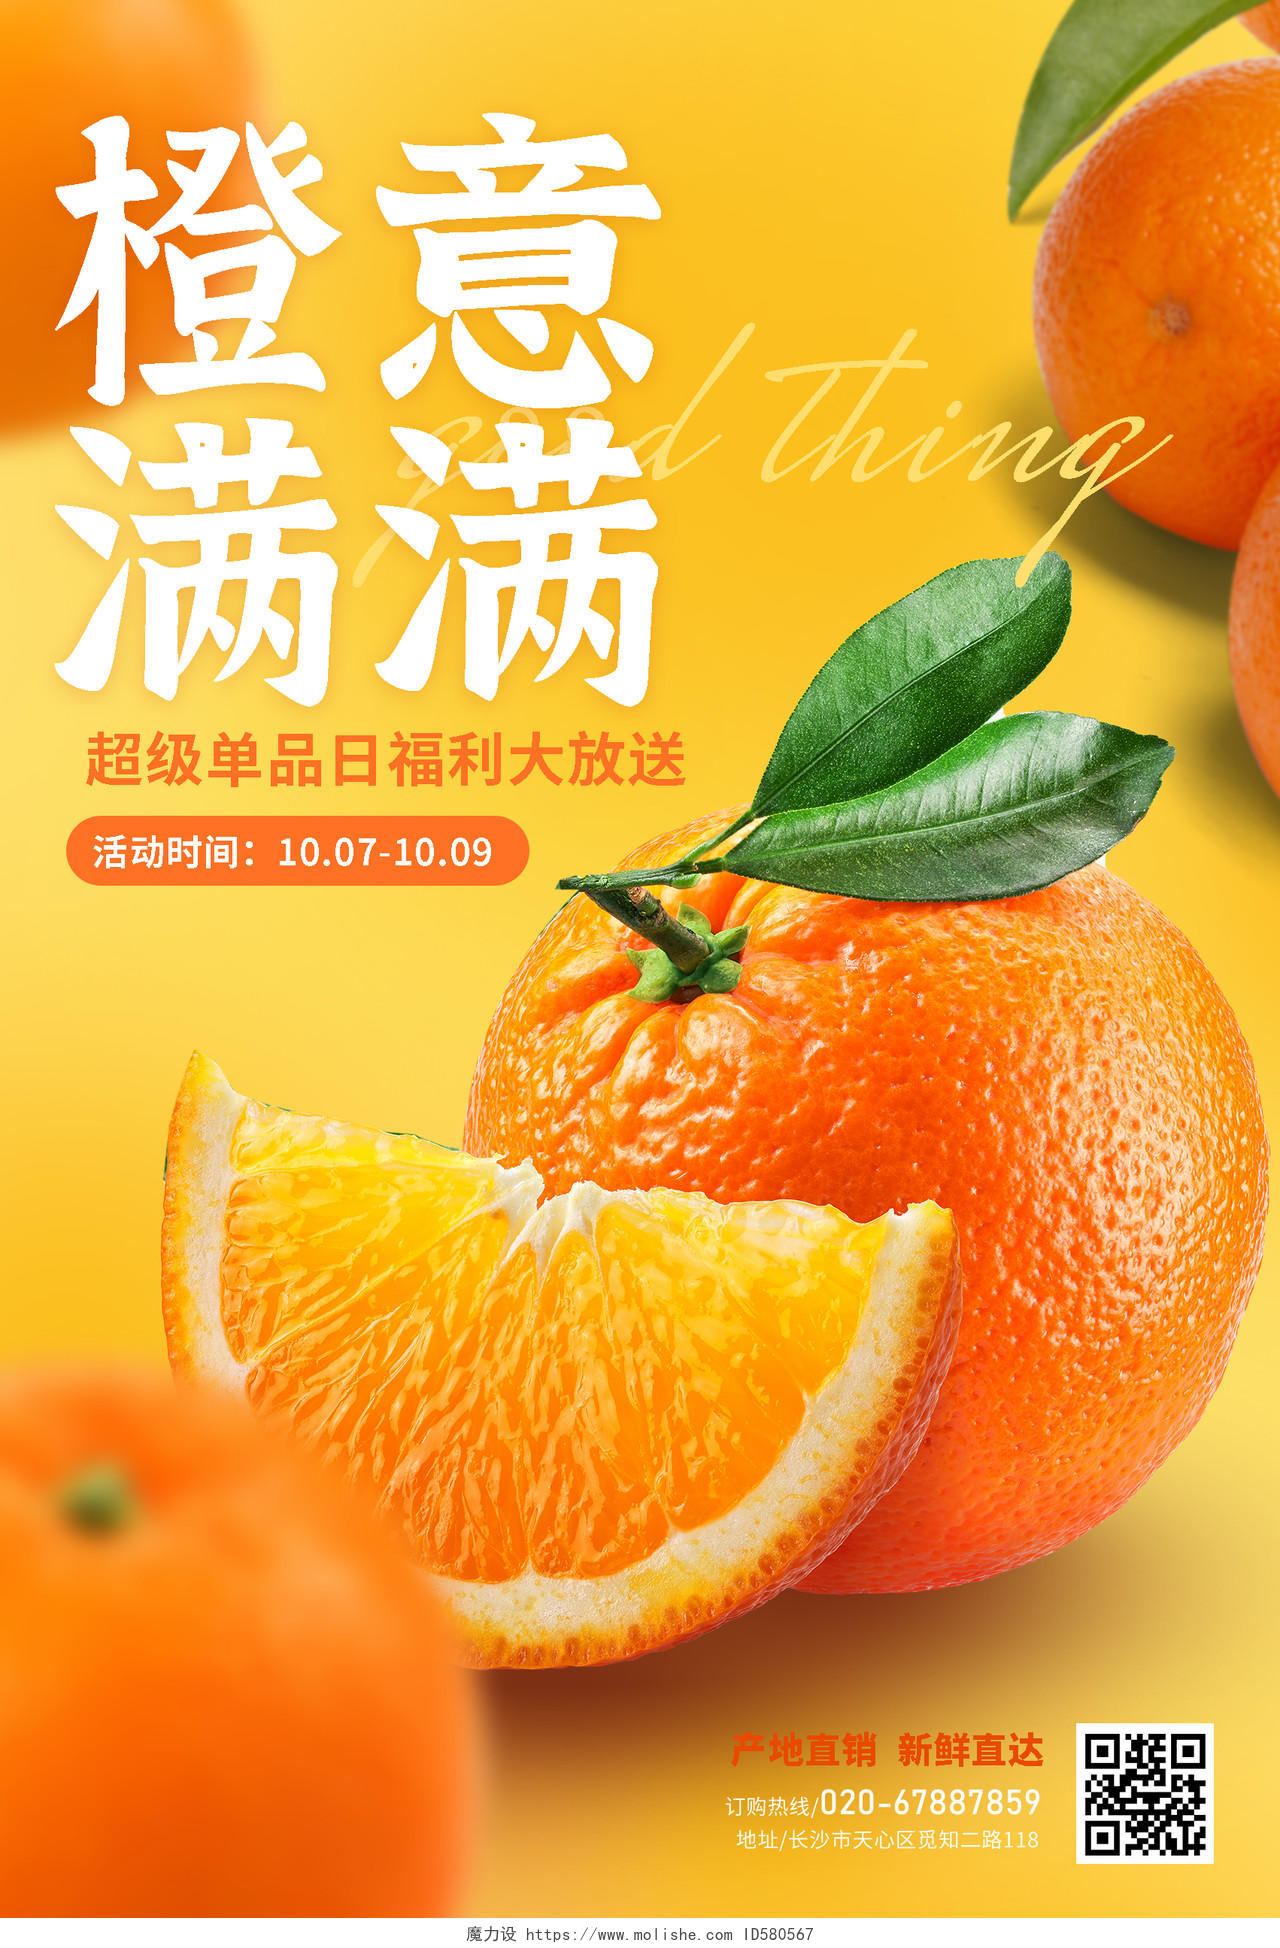 简约水果橙子活动促销海报店铺海报